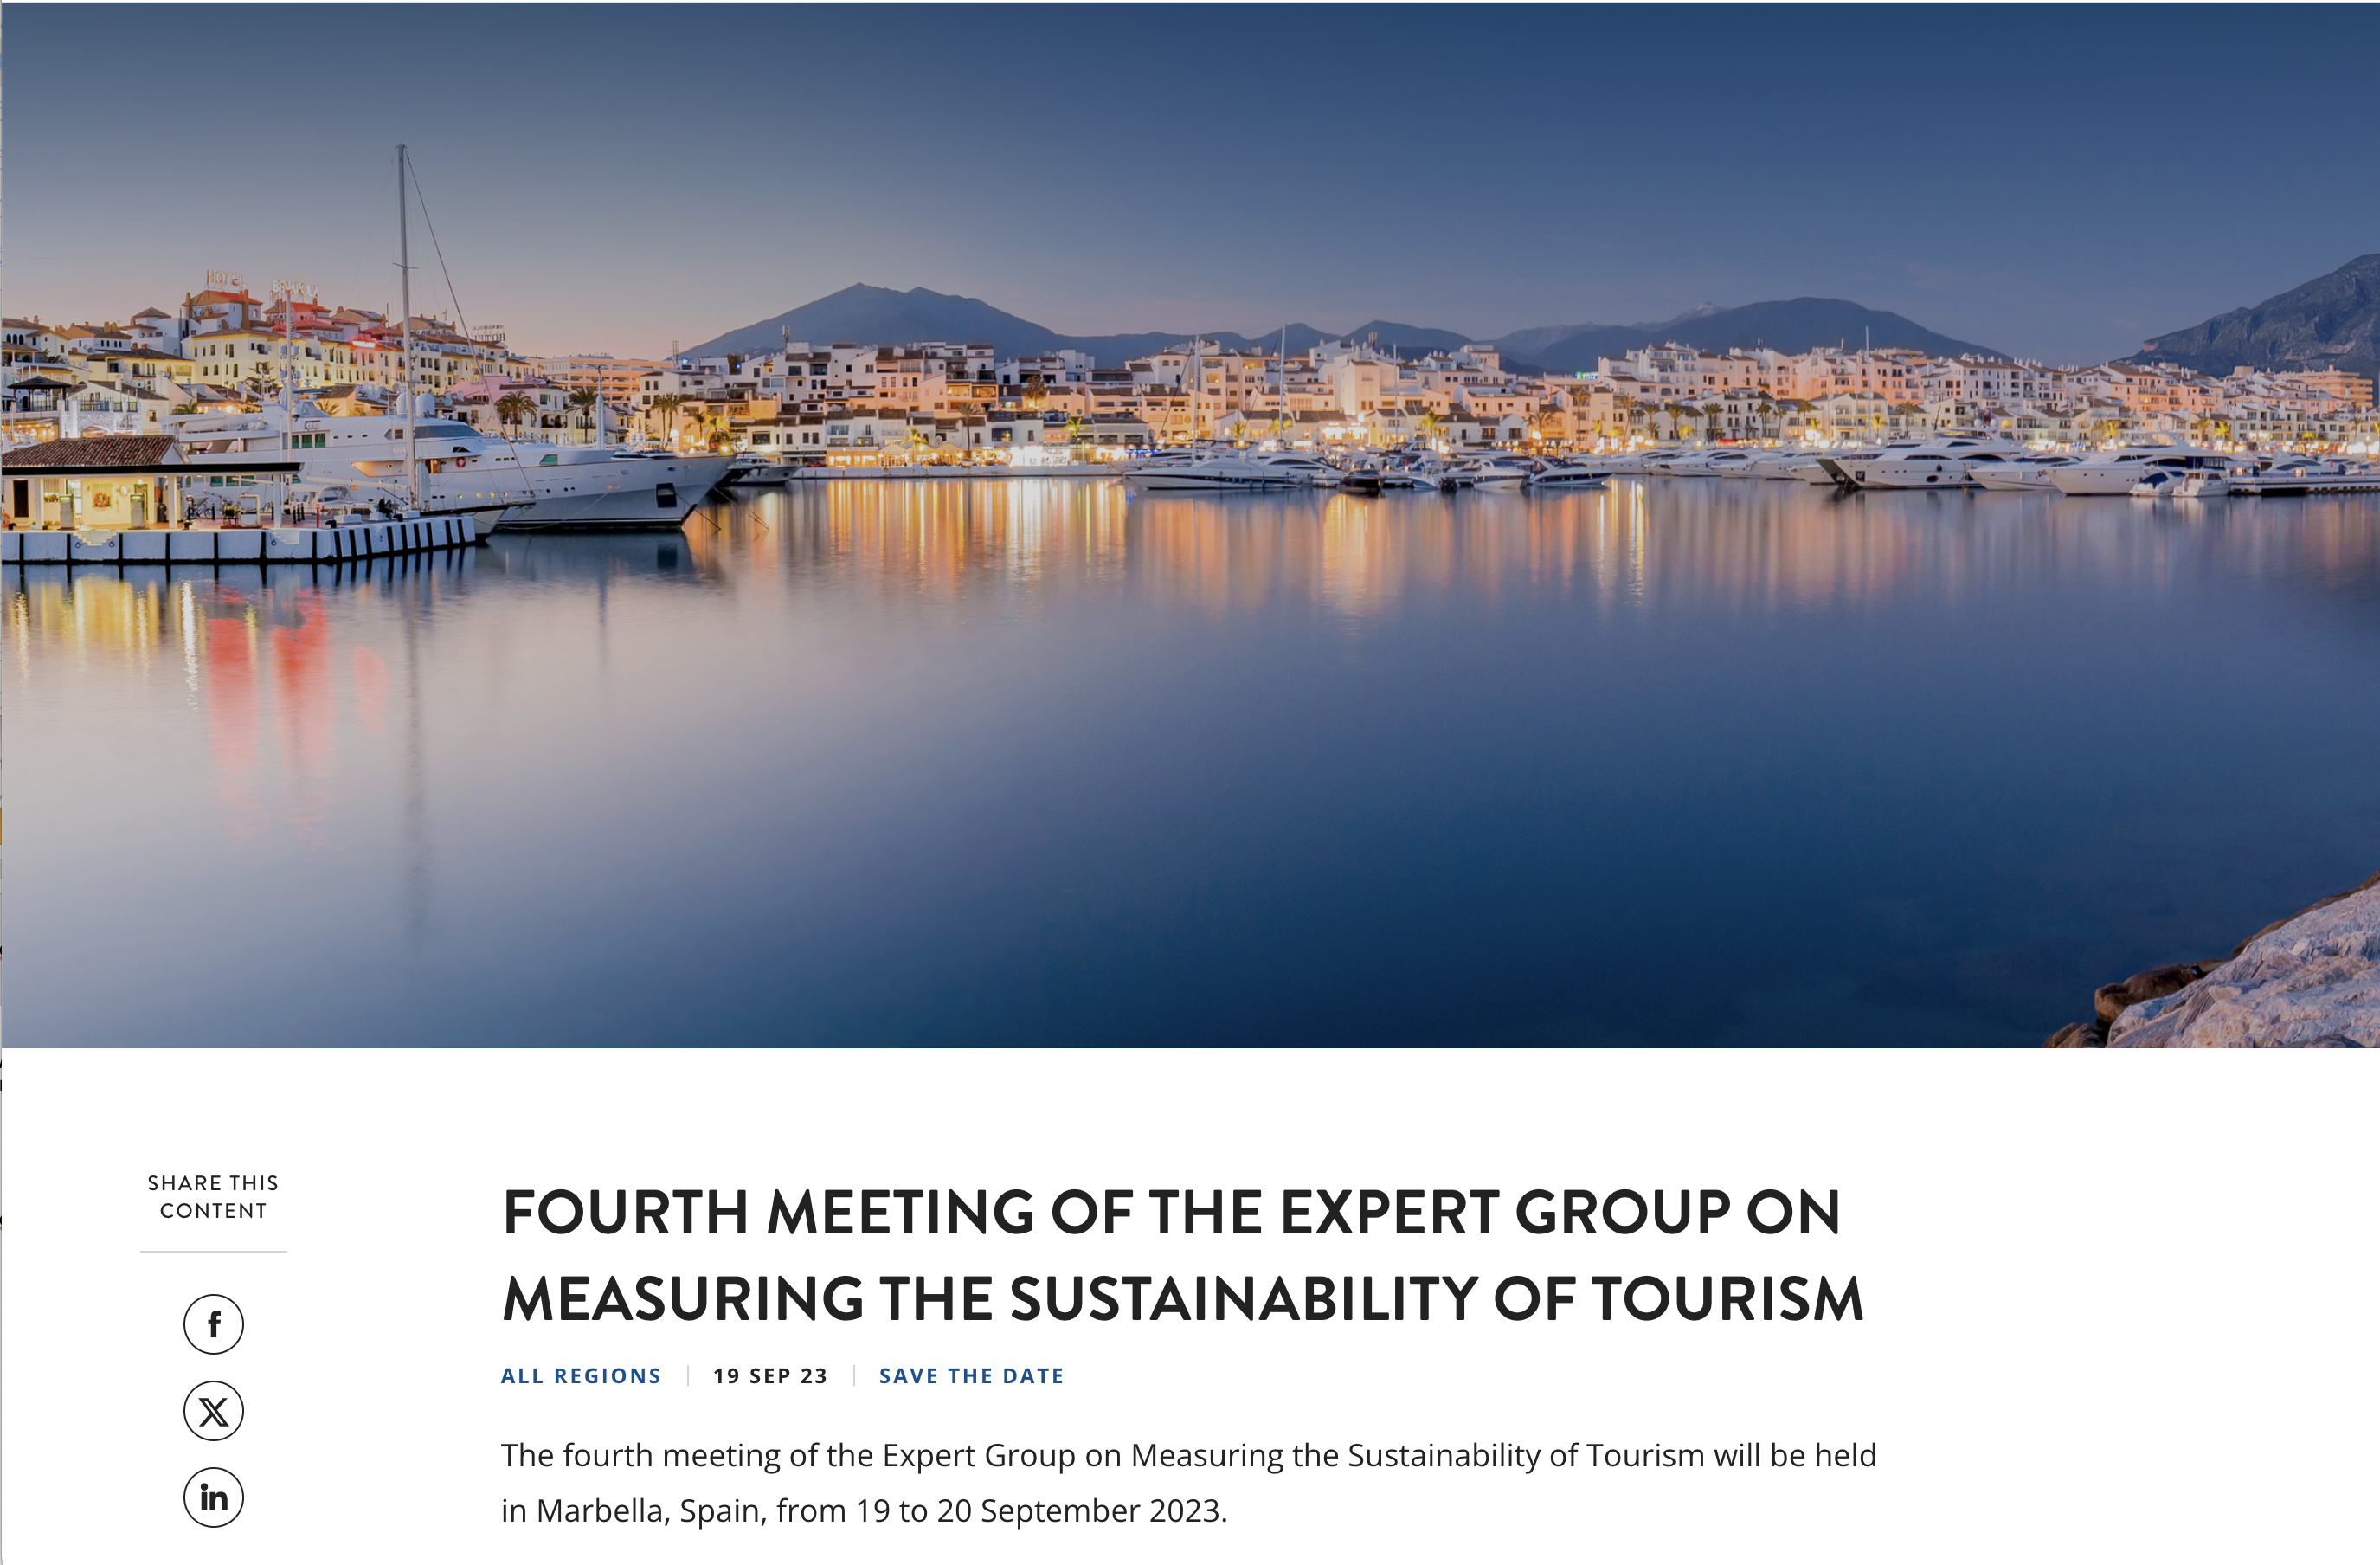 Cuarta reunión del Grupo de Expertos sobre la Medición de la Sostenibilidad del Turismo en Marbella del 19 al 20 de septiembre